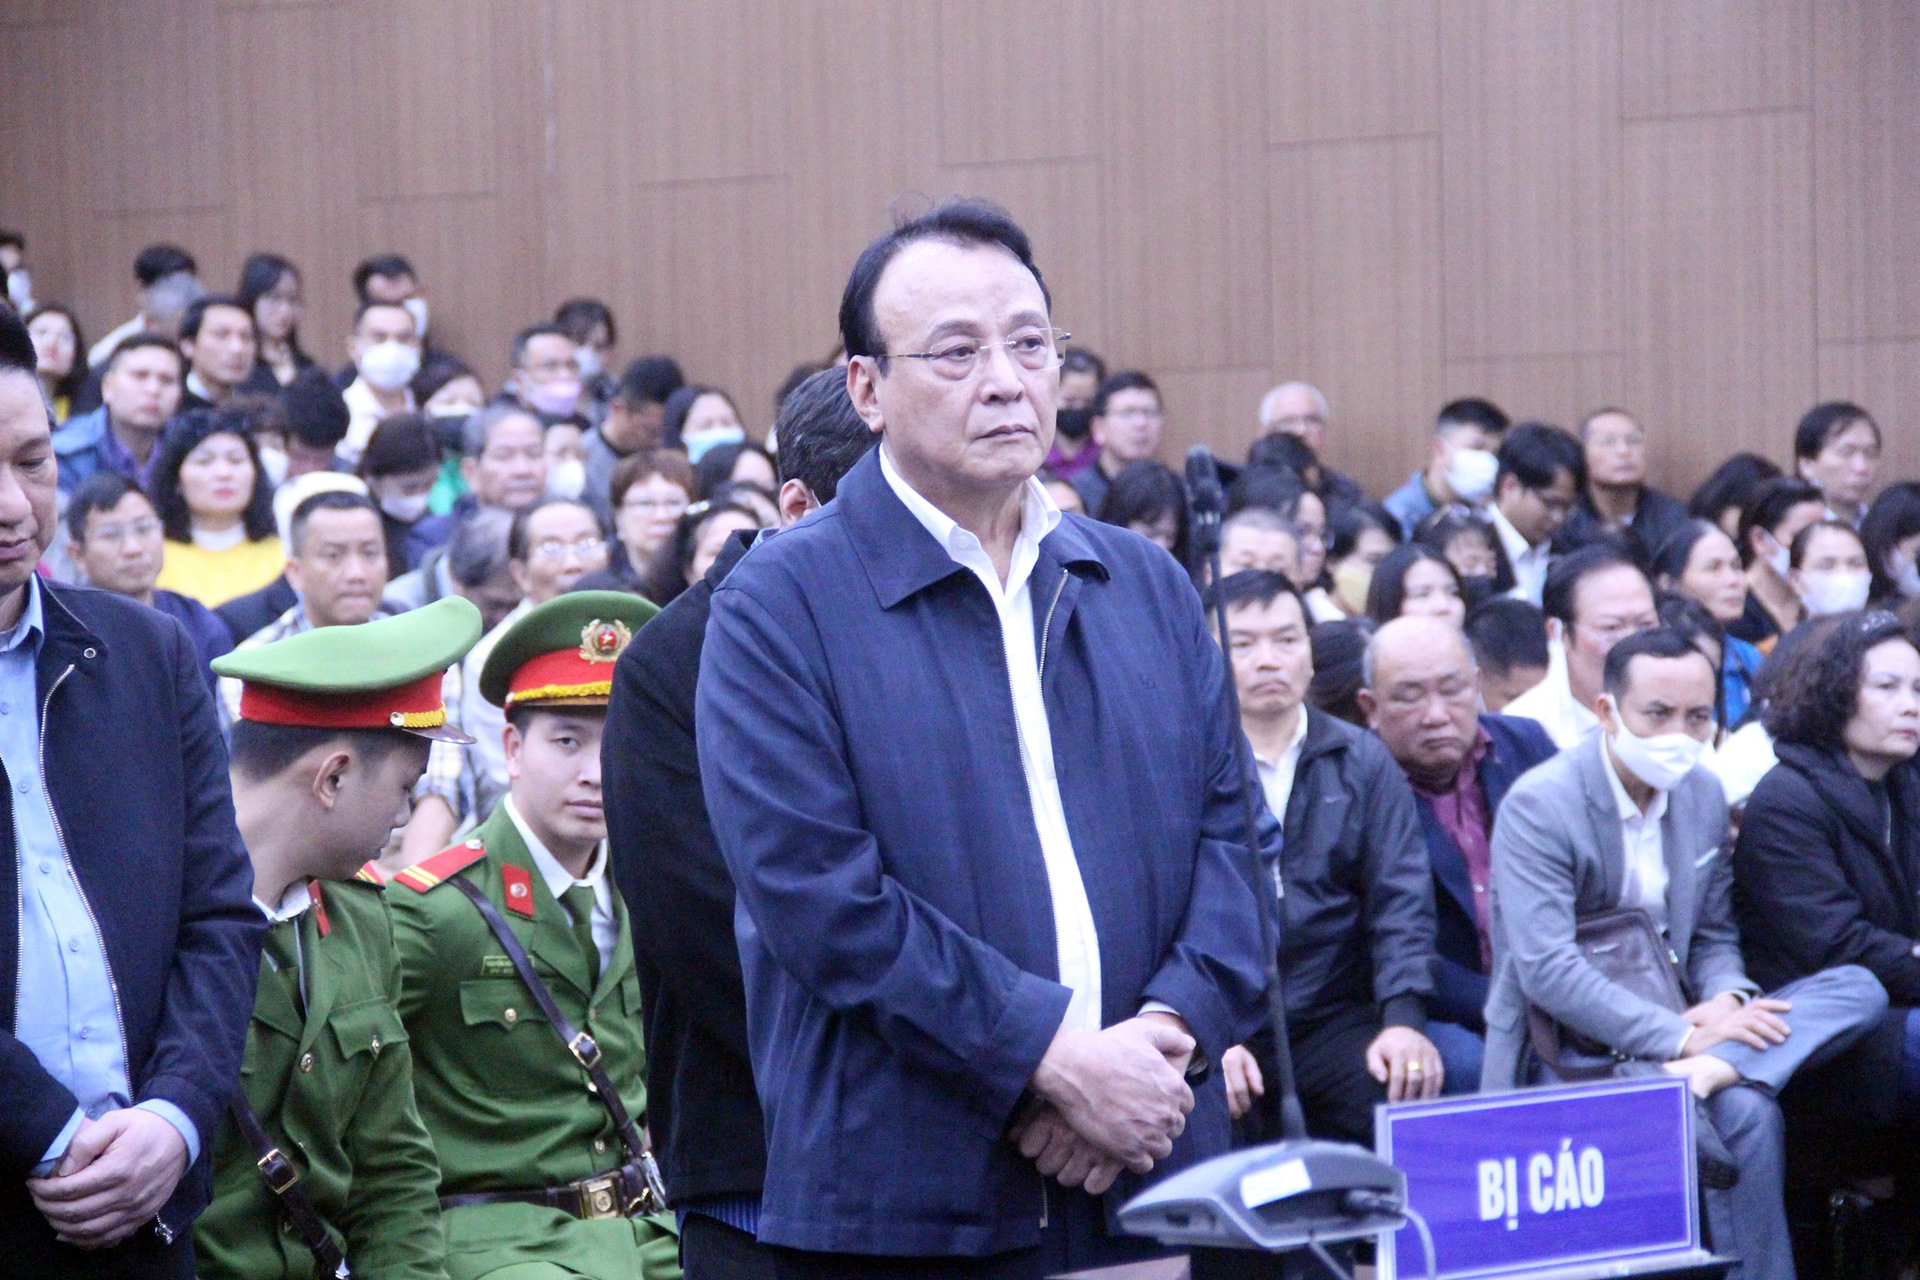 Ông chủ Tân Hoàng Minh bị đề nghị đến 10 năm tù- Ảnh 2.